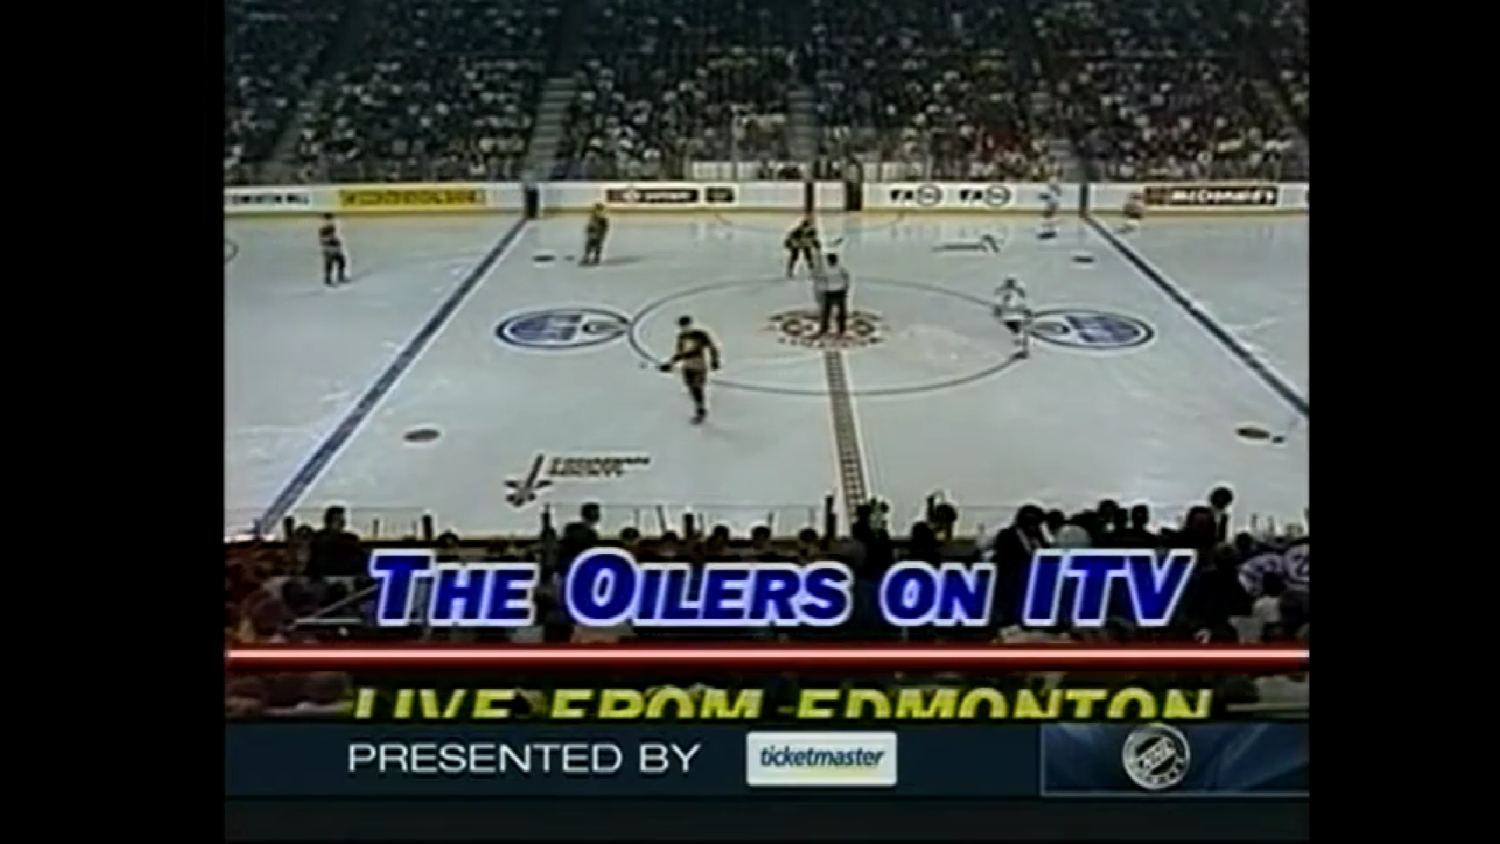 НХЛ 1985/1986. Регулярный сезон. Эдмонтон - Ванкувер (1986.04.02)